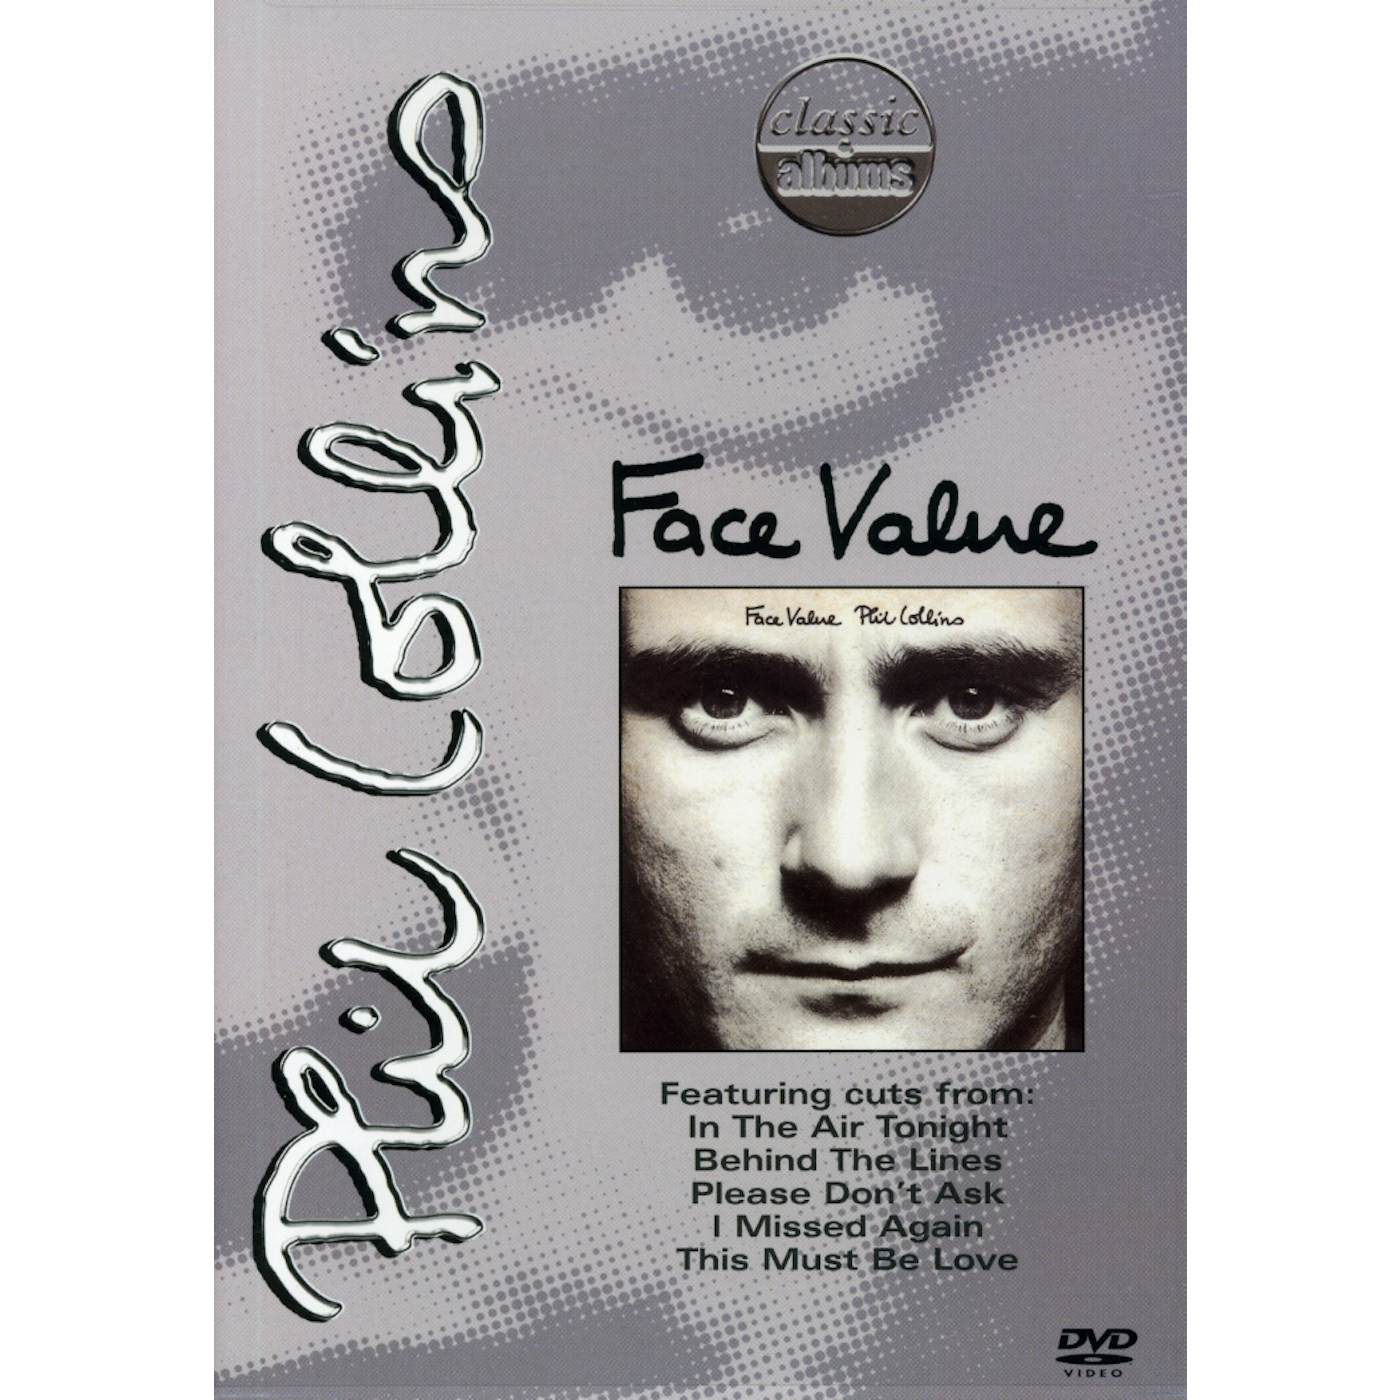 Phil Collins FACE VALUE: CLASSIC ALBUM DVD